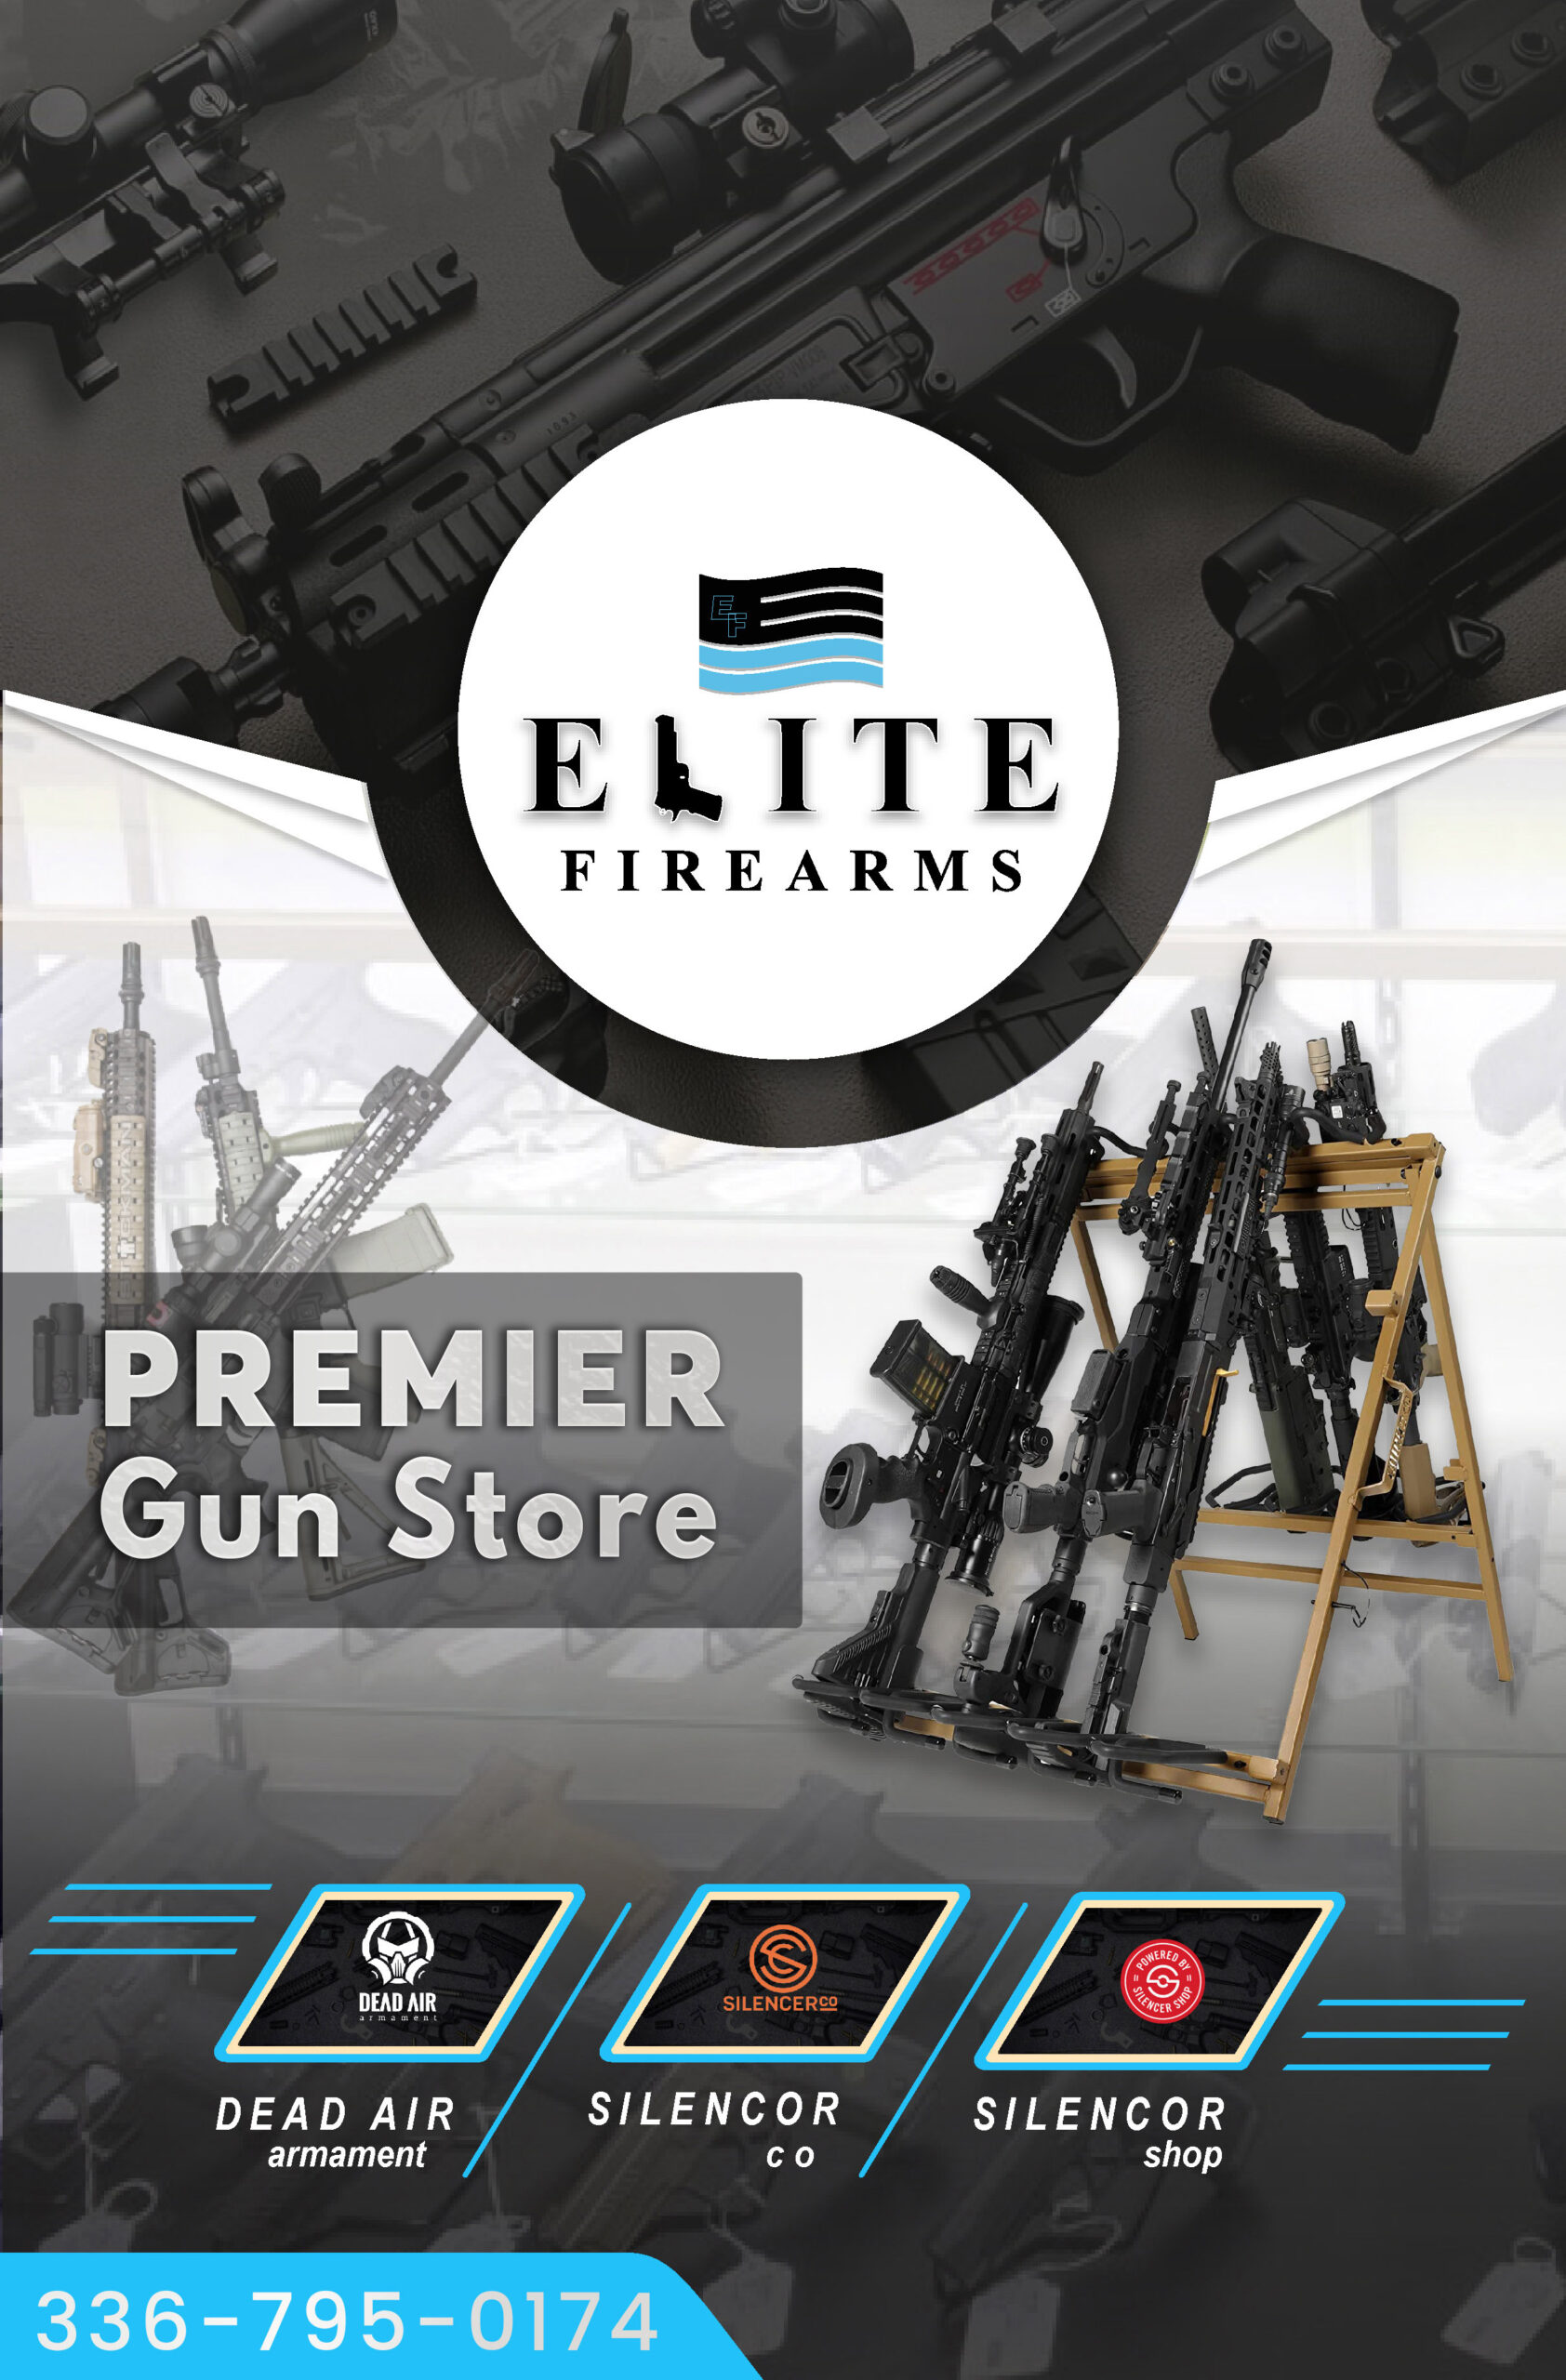 Elite Firearms, NC: The Best Firearms